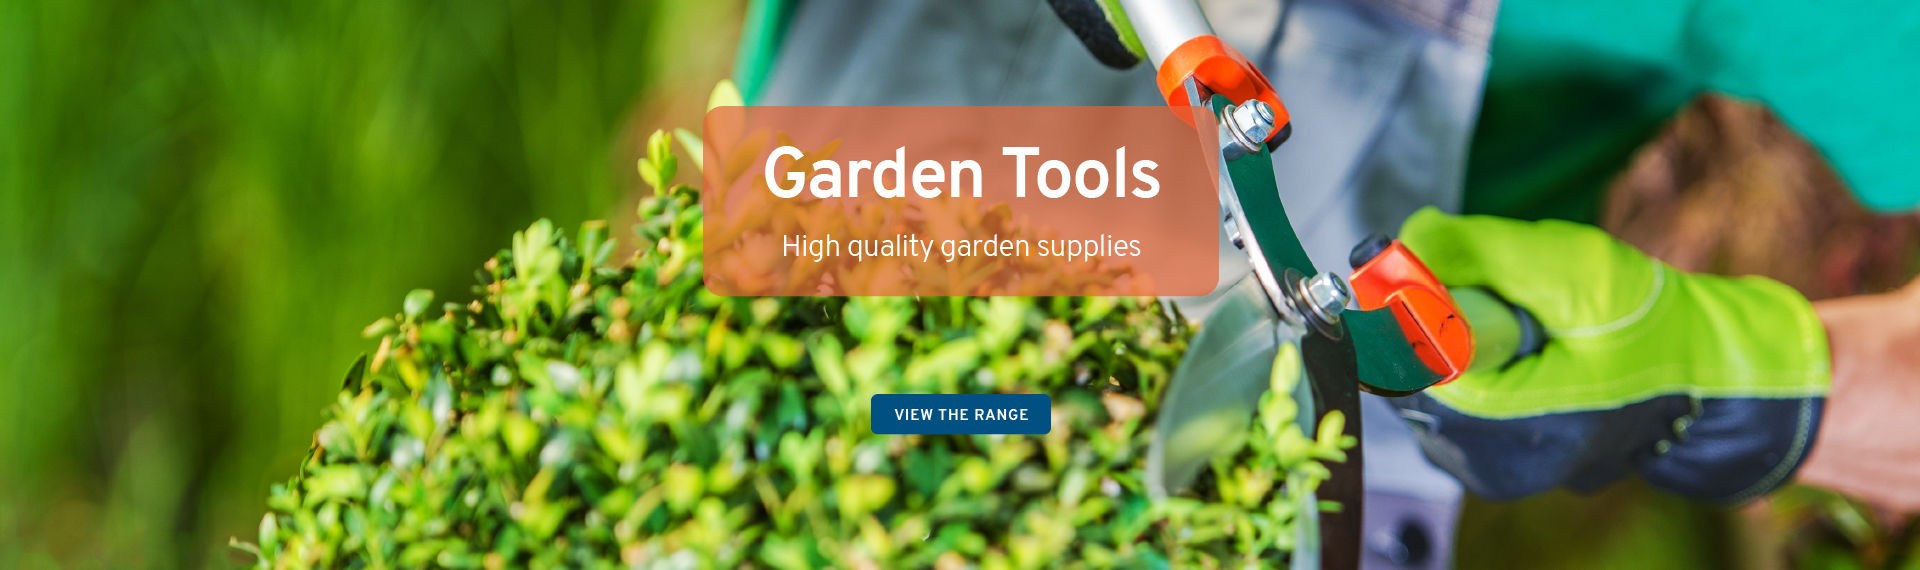 Garden Tools - High Quality Garden Supplies